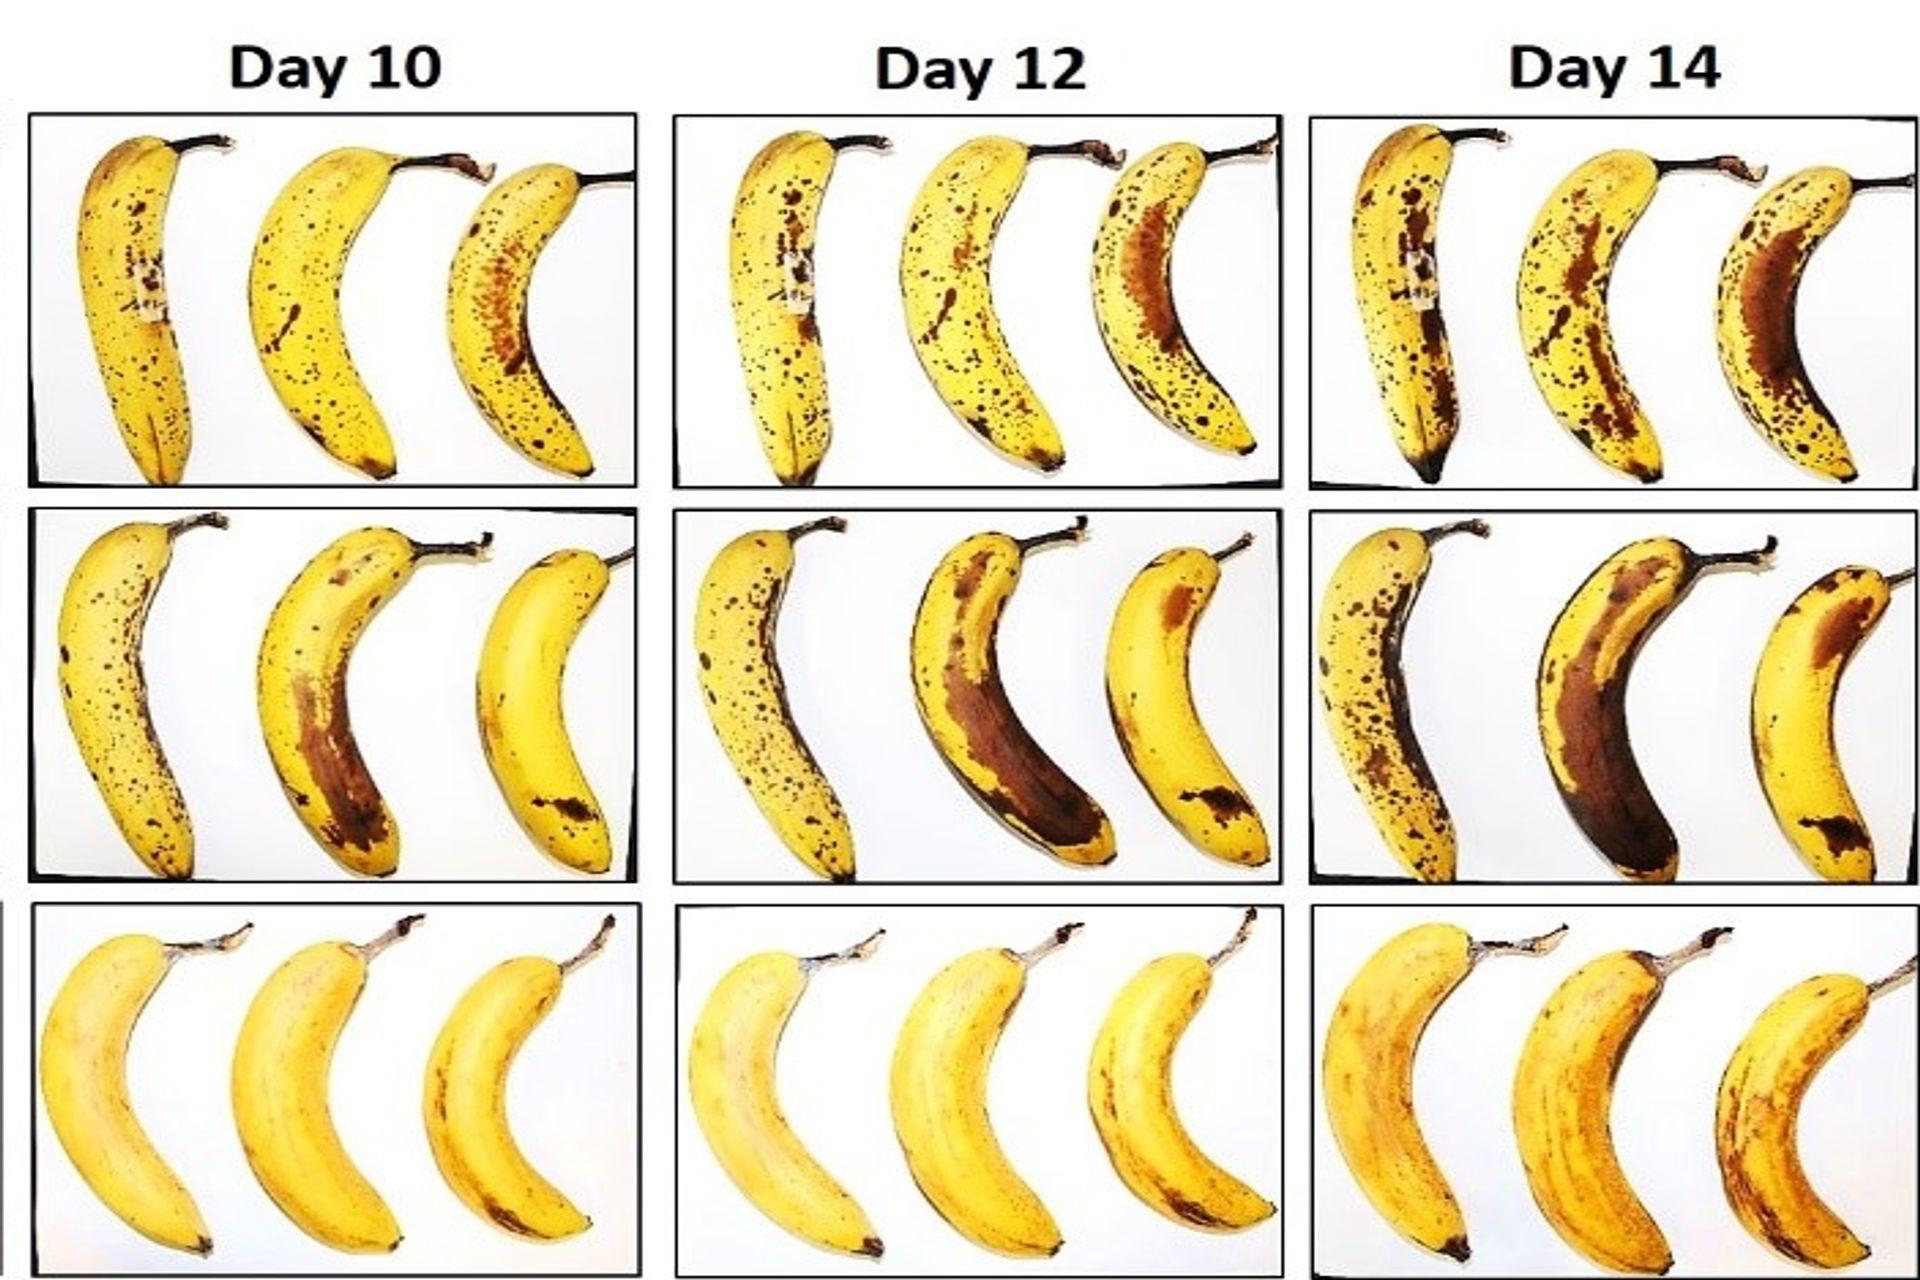 Tre bananer udsat af EMPA og Lidl Switzerland for konserveringstesten med og uden fibrøs celluloseindpakning efter 10, 12 og 14 dage